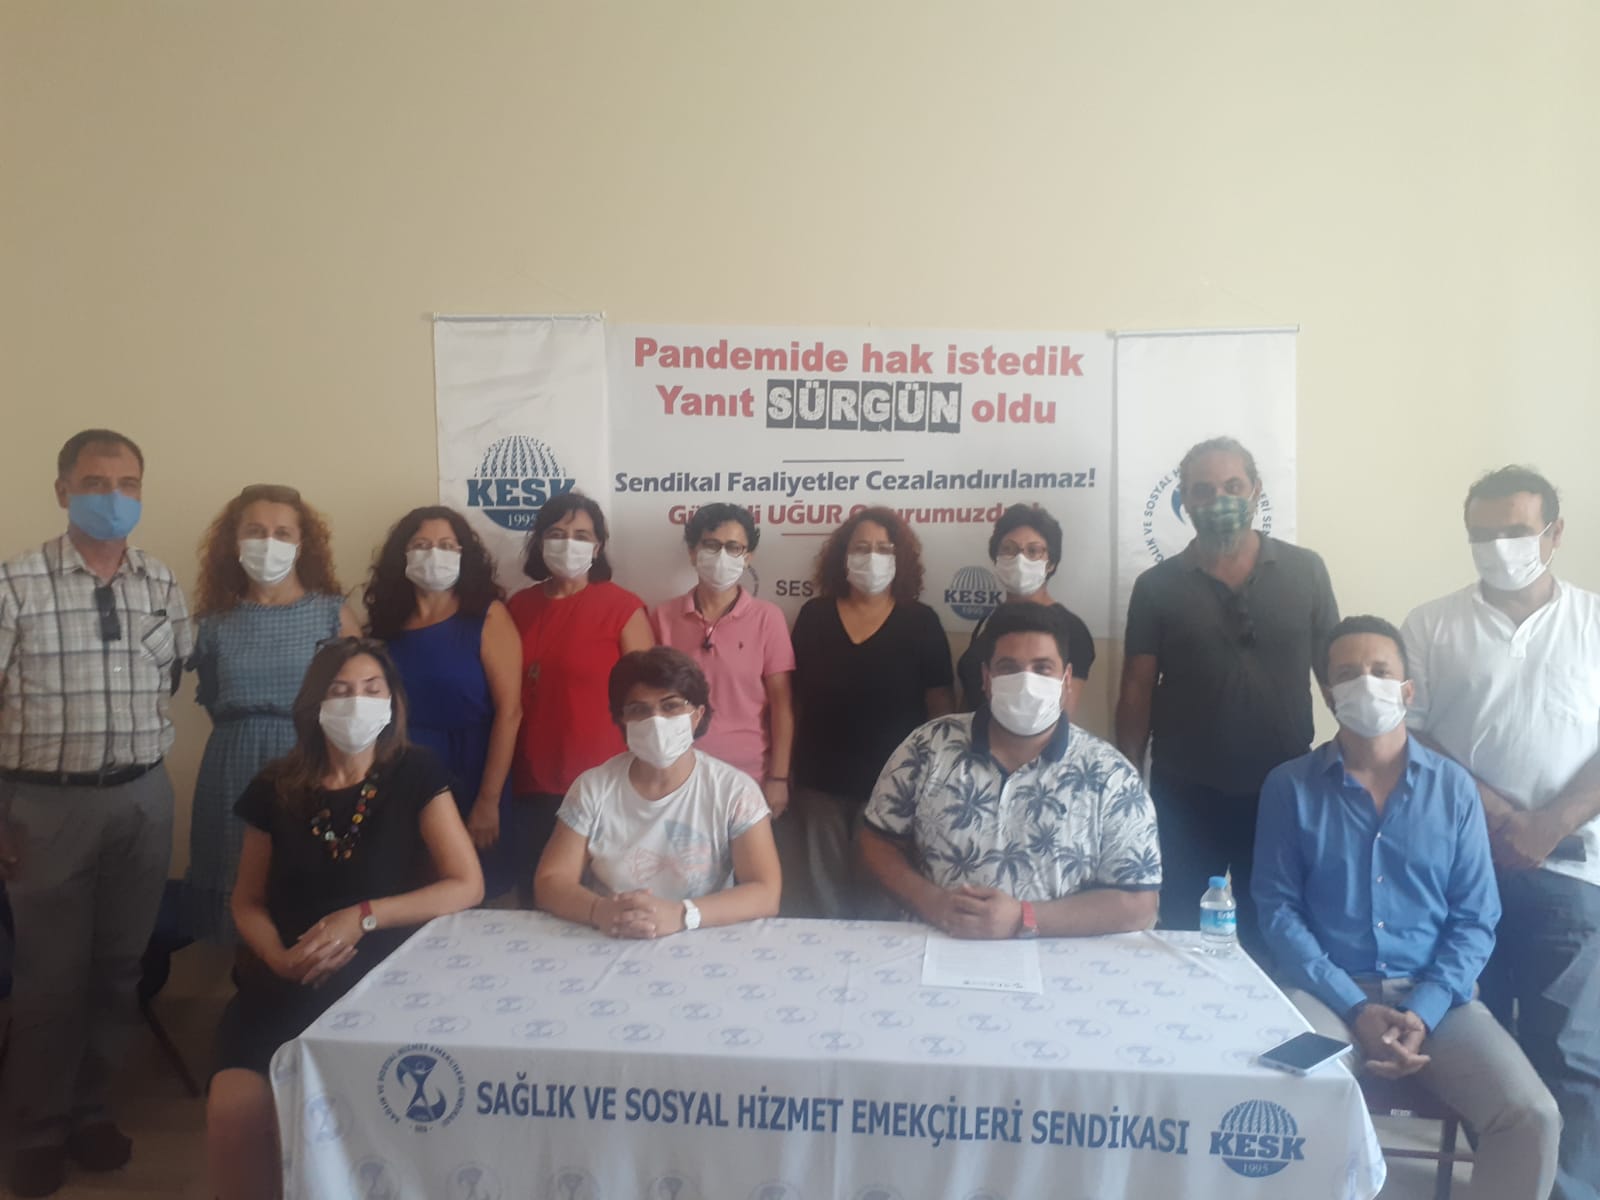 İş Yeri Temsilcimiz Günseli Uğur’un Sürgün Edilmesine Karşı Açıklama Yapan İzmir Şubemiz: Hastane İdaresi Suç İşlemektedir, Hukuksuz İşlem Geri Çekilene Kadar Mücadeleye Devam Edeceğiz